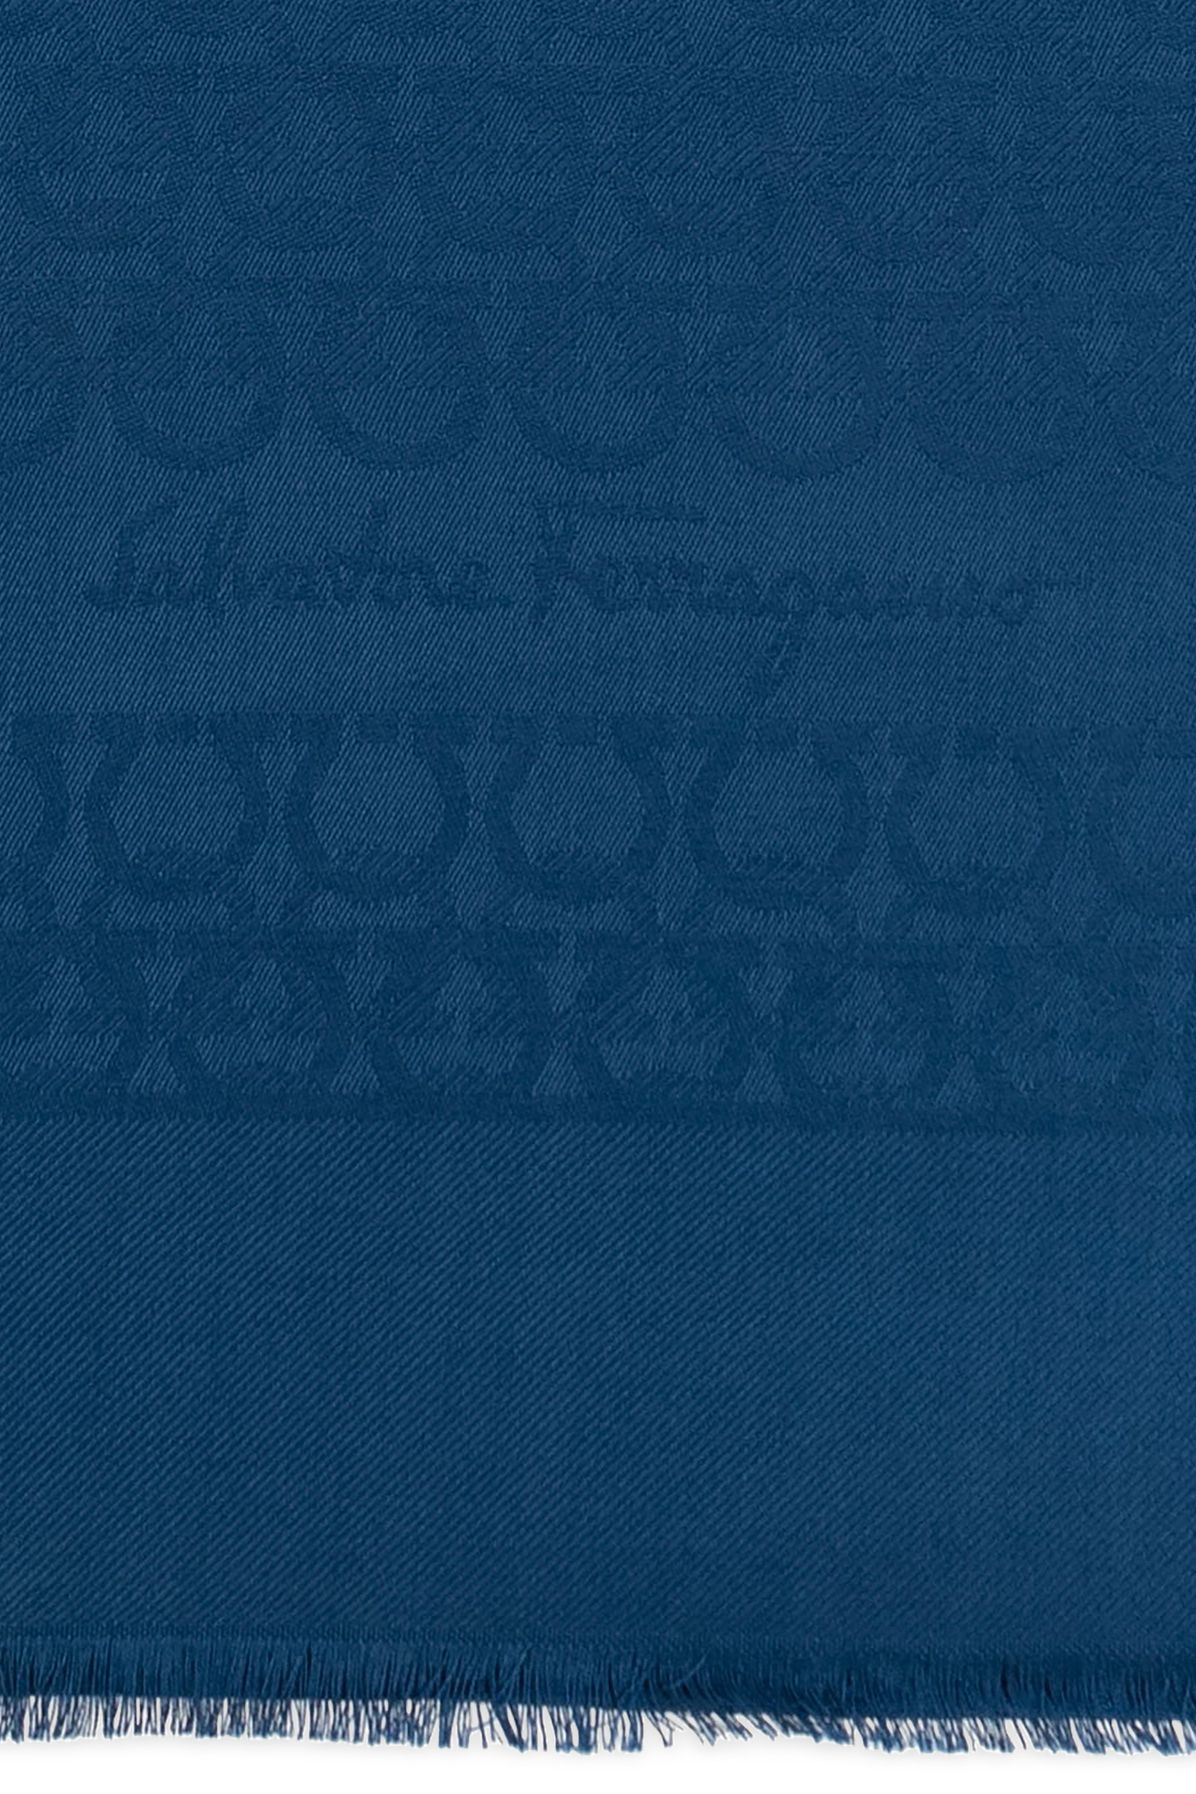 Salvatore Ferragamo Scarf with monogram